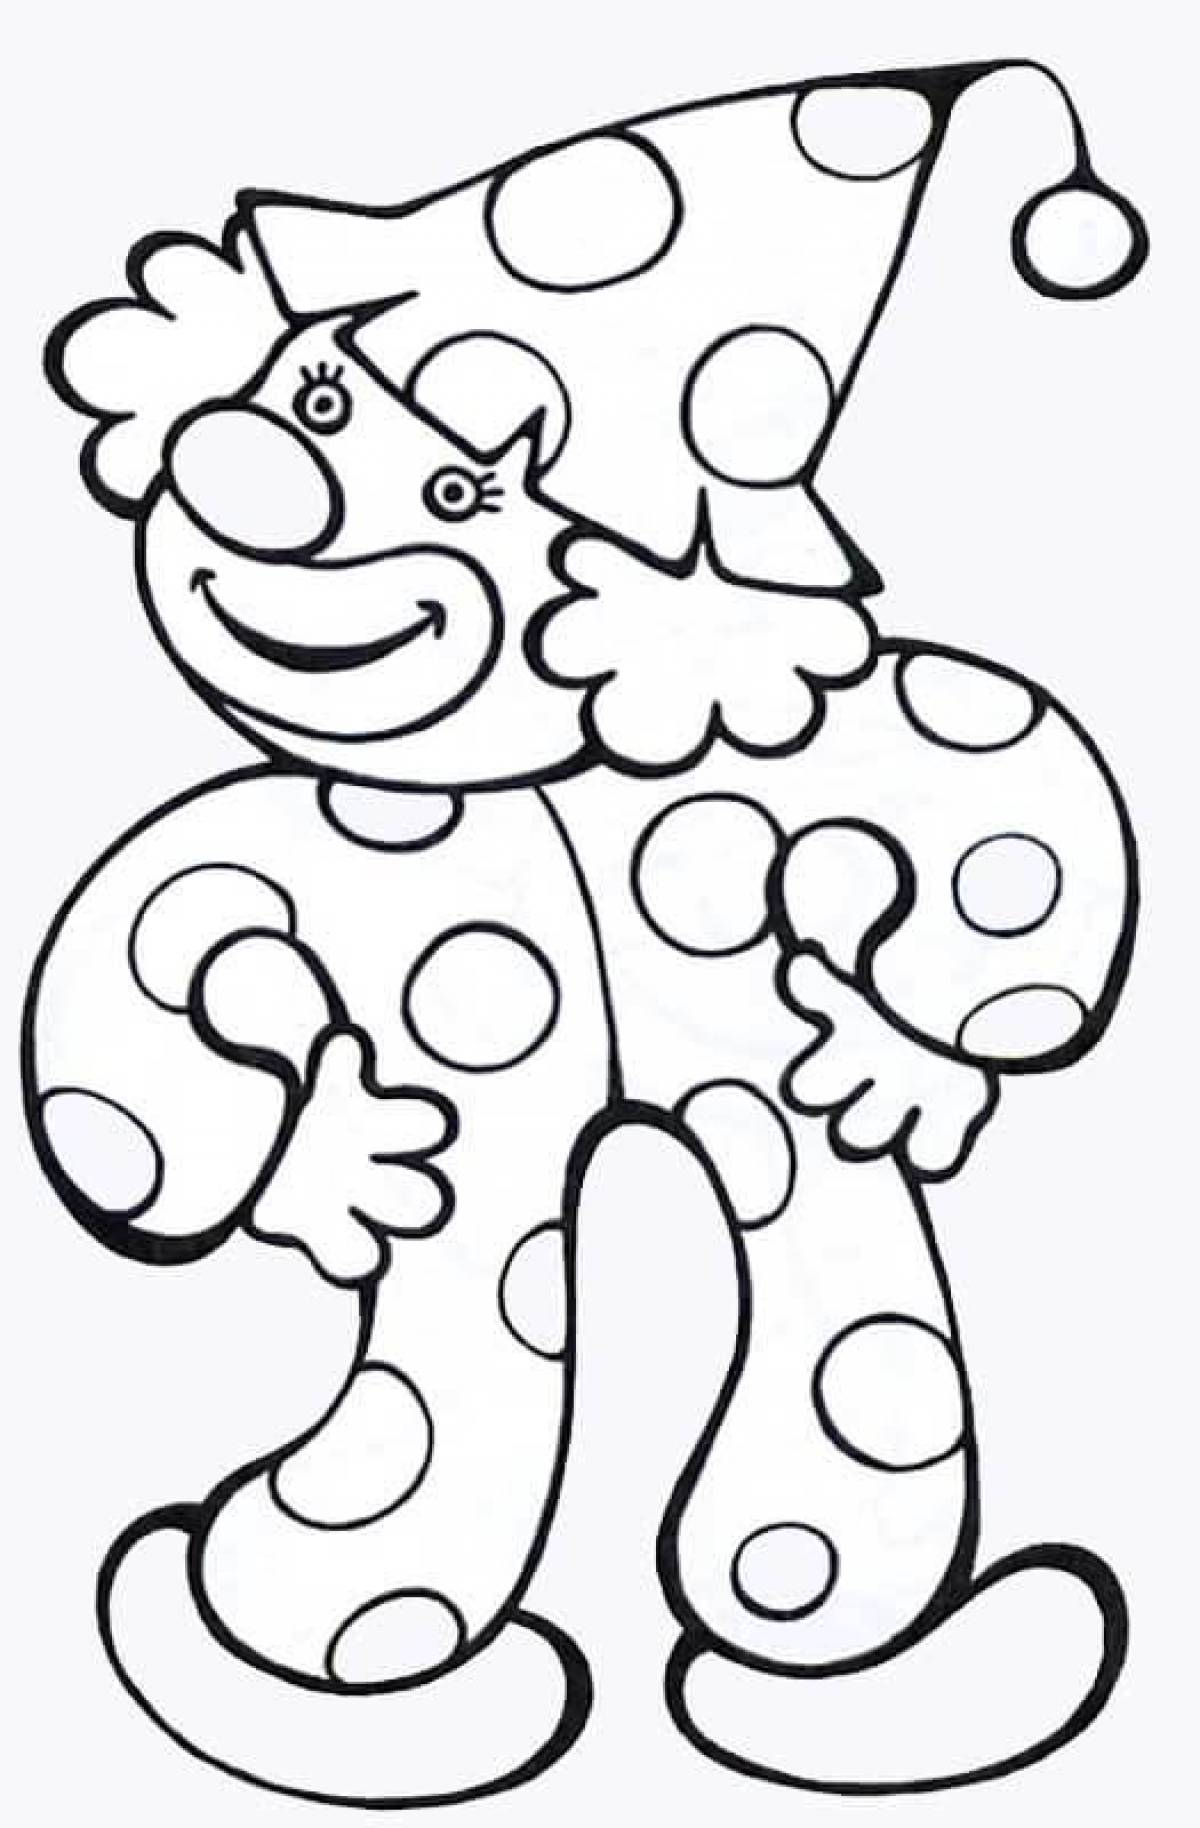 Раскраска клоун для детей 3 4 лет. Клоун раскраска. Клоун раскраска для детей. Клоун для раскрашивания детям. Раскраска весёлый клоун для детей.